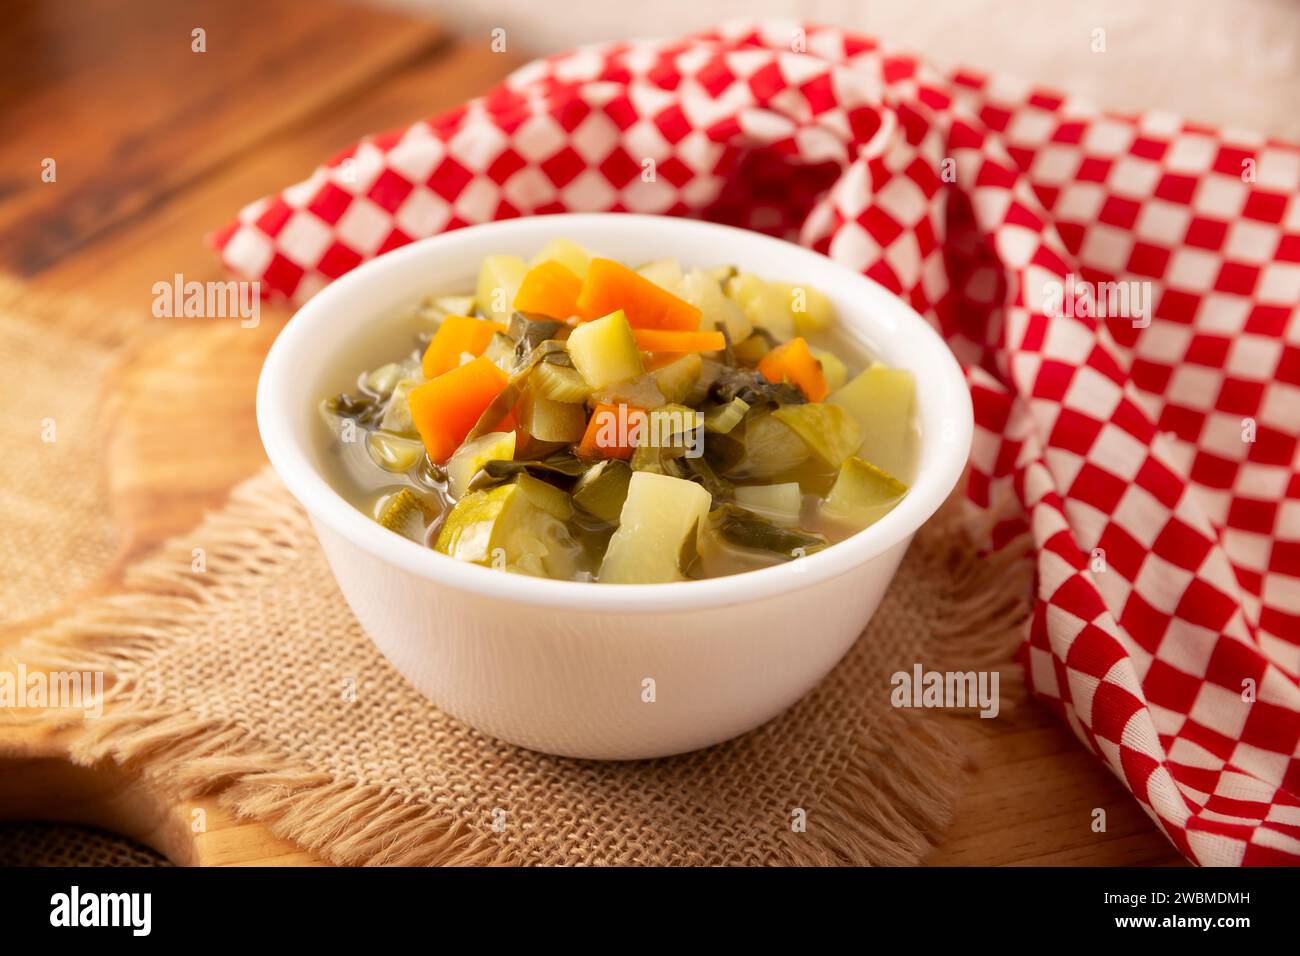 Soupe de légumes frais maison, recette facile faite avec des légumes hachés, carotte, céleri, citrouille, épinards, chayote et autres ingrédients, plat sain Banque D'Images